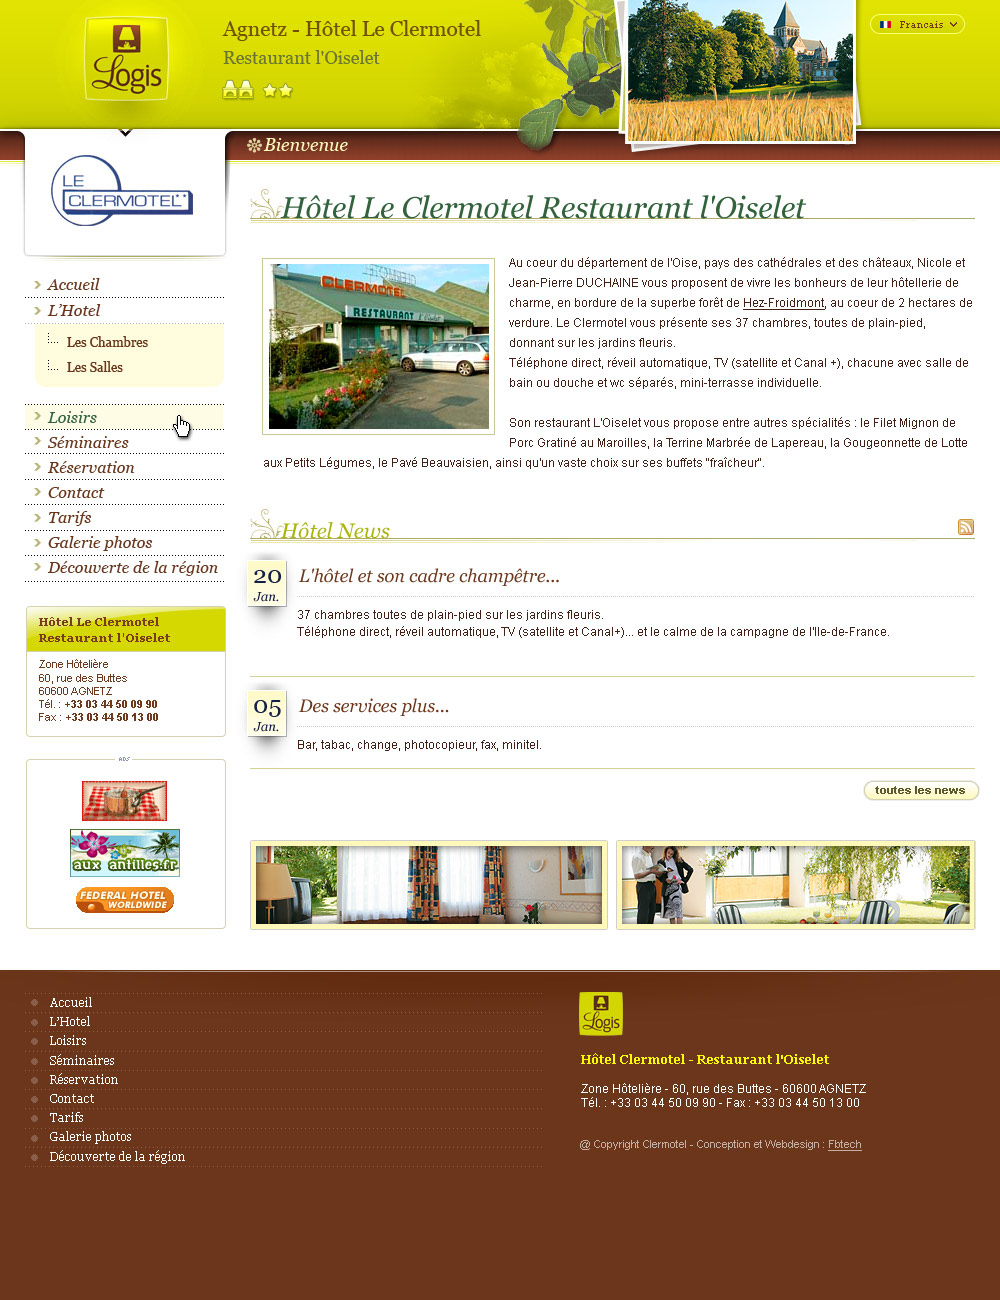 web layout portals sites